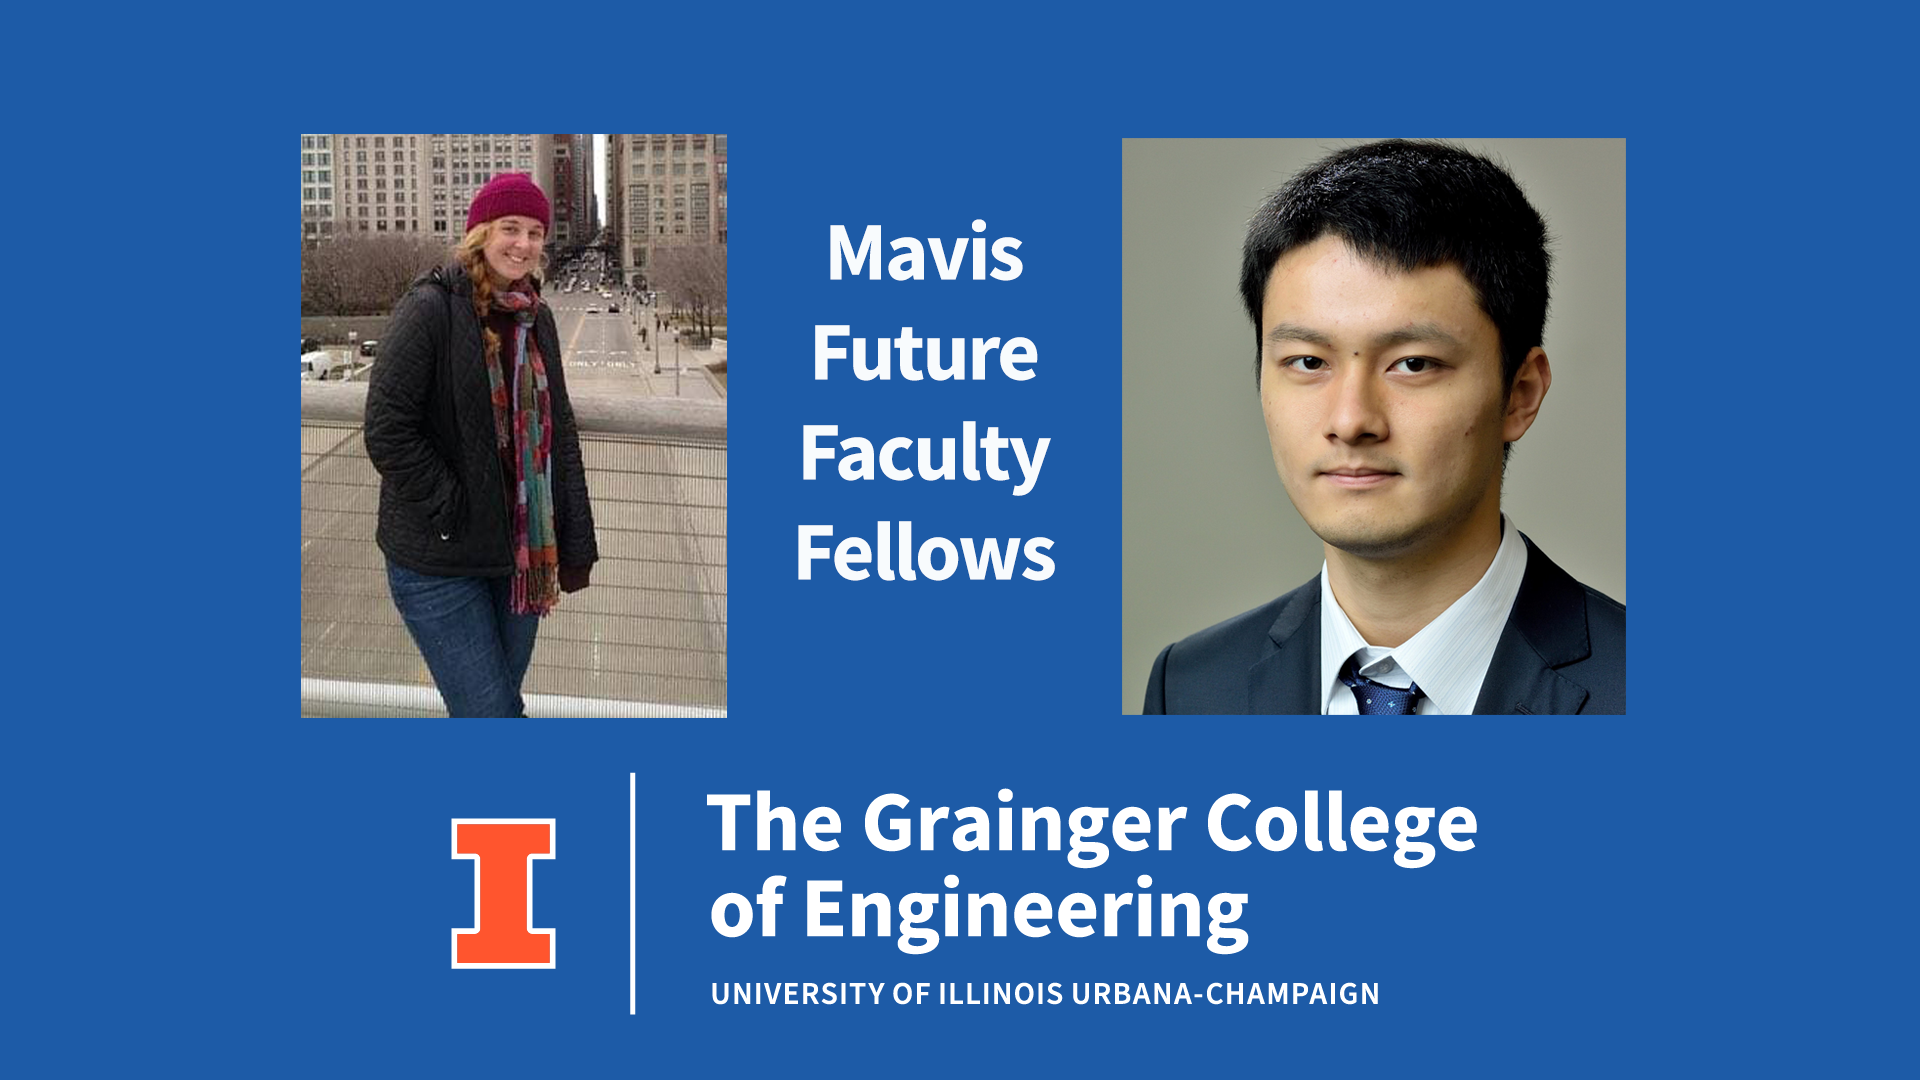 PhD students selected as Mavis Future Faculty Fellows 